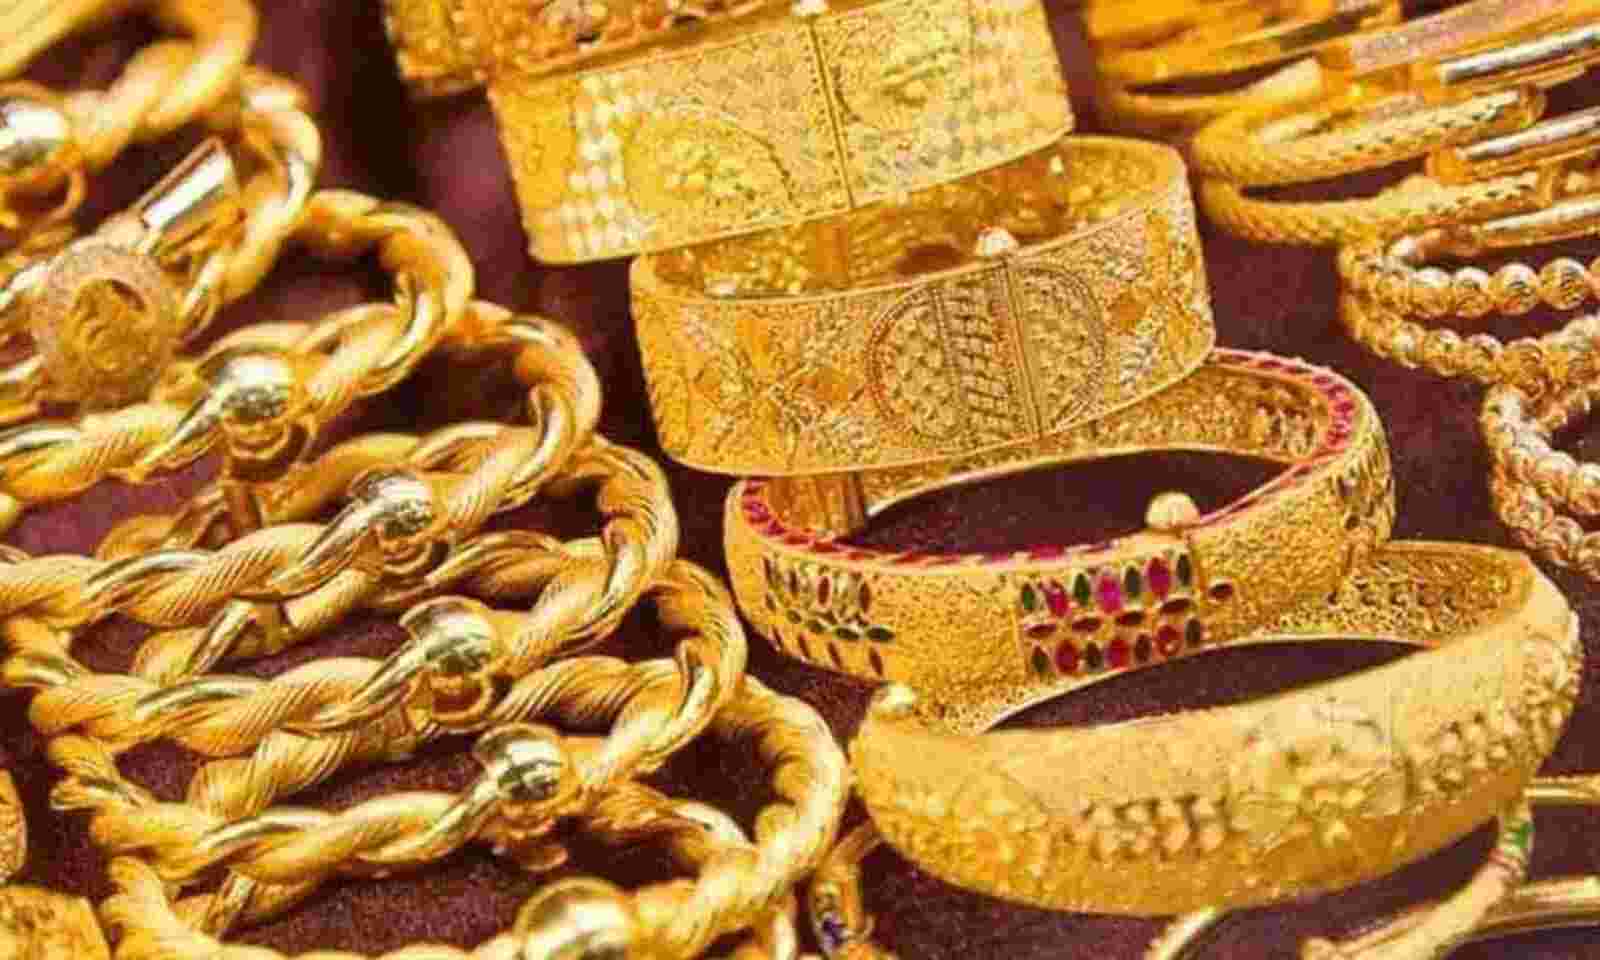 gold rates today in delhi, chennai, kolkata, mumbai - 26 january 2022